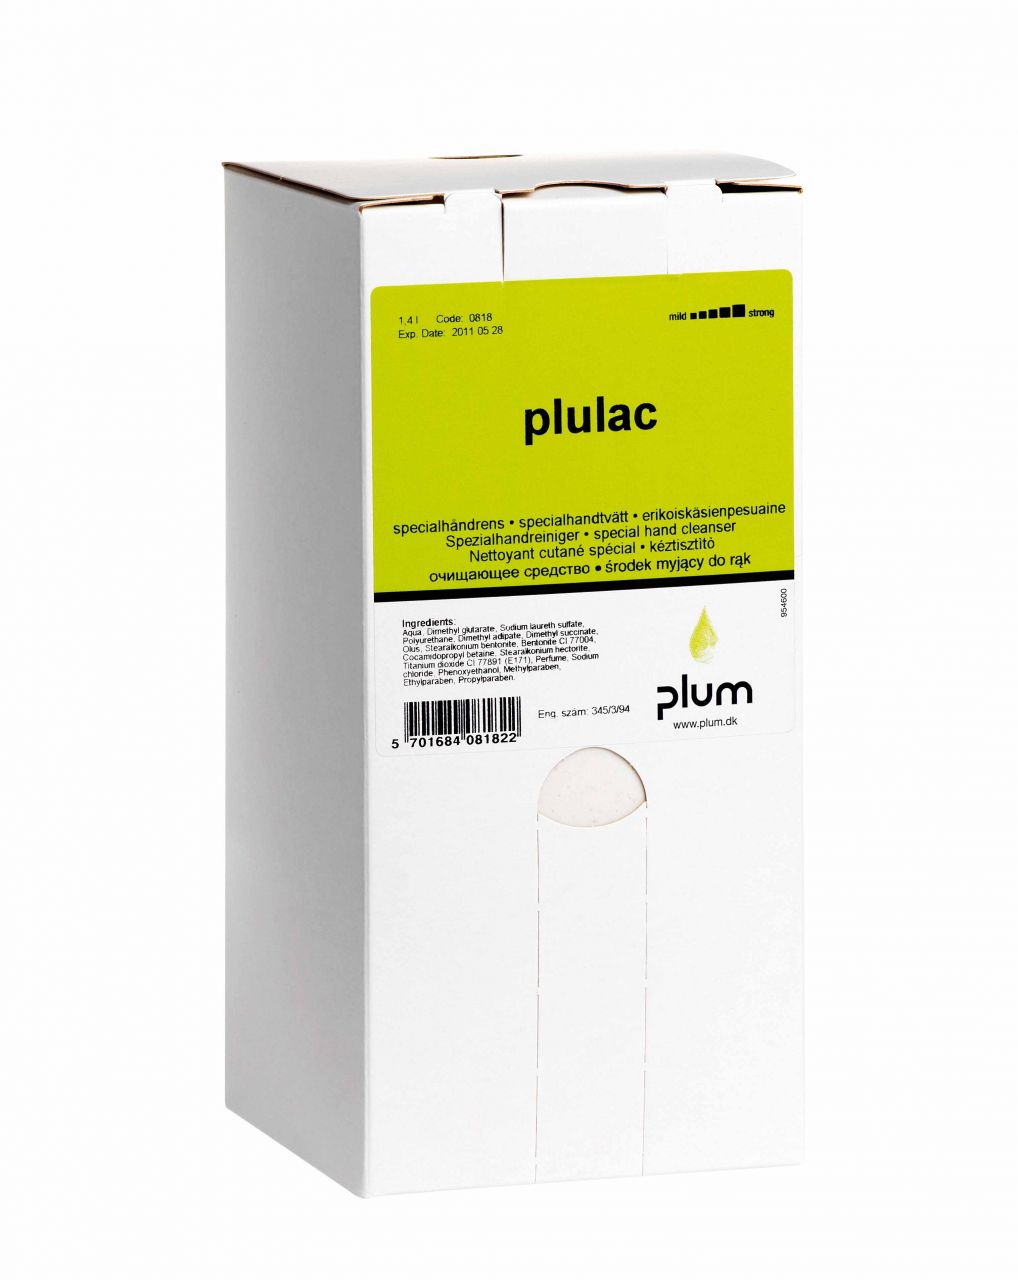 Plum Plulac Kéztisztító, 1,4l Utántöltő Bag-in-box 0818